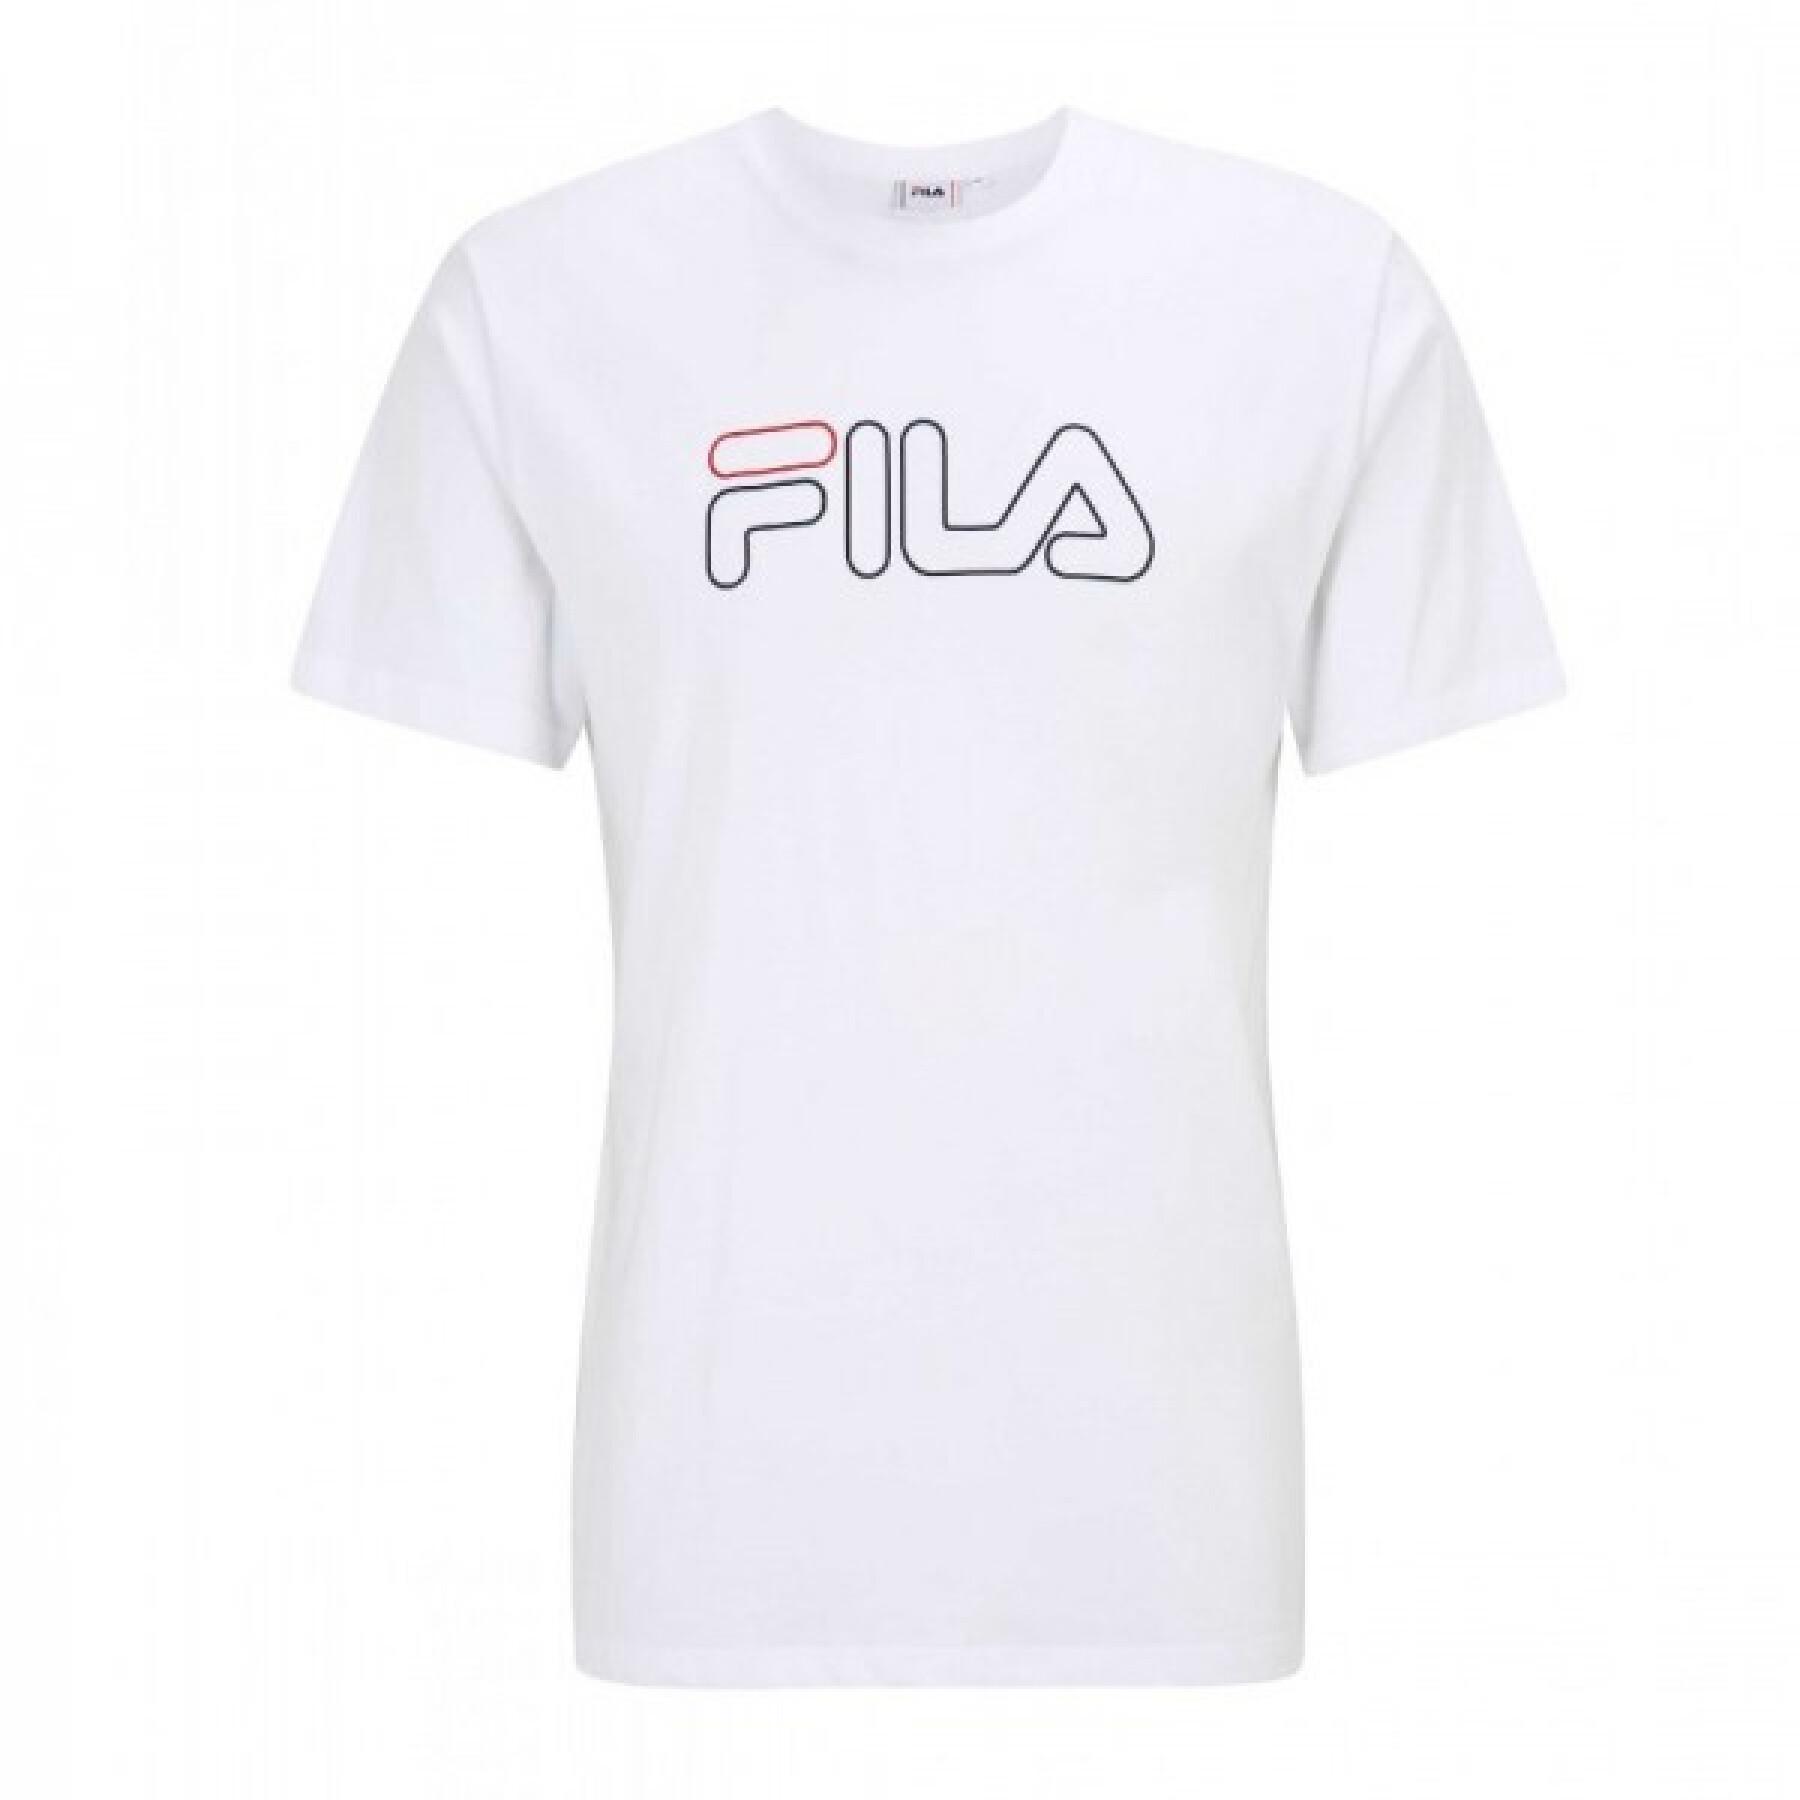 Girl's T-shirt Fila Salmaise